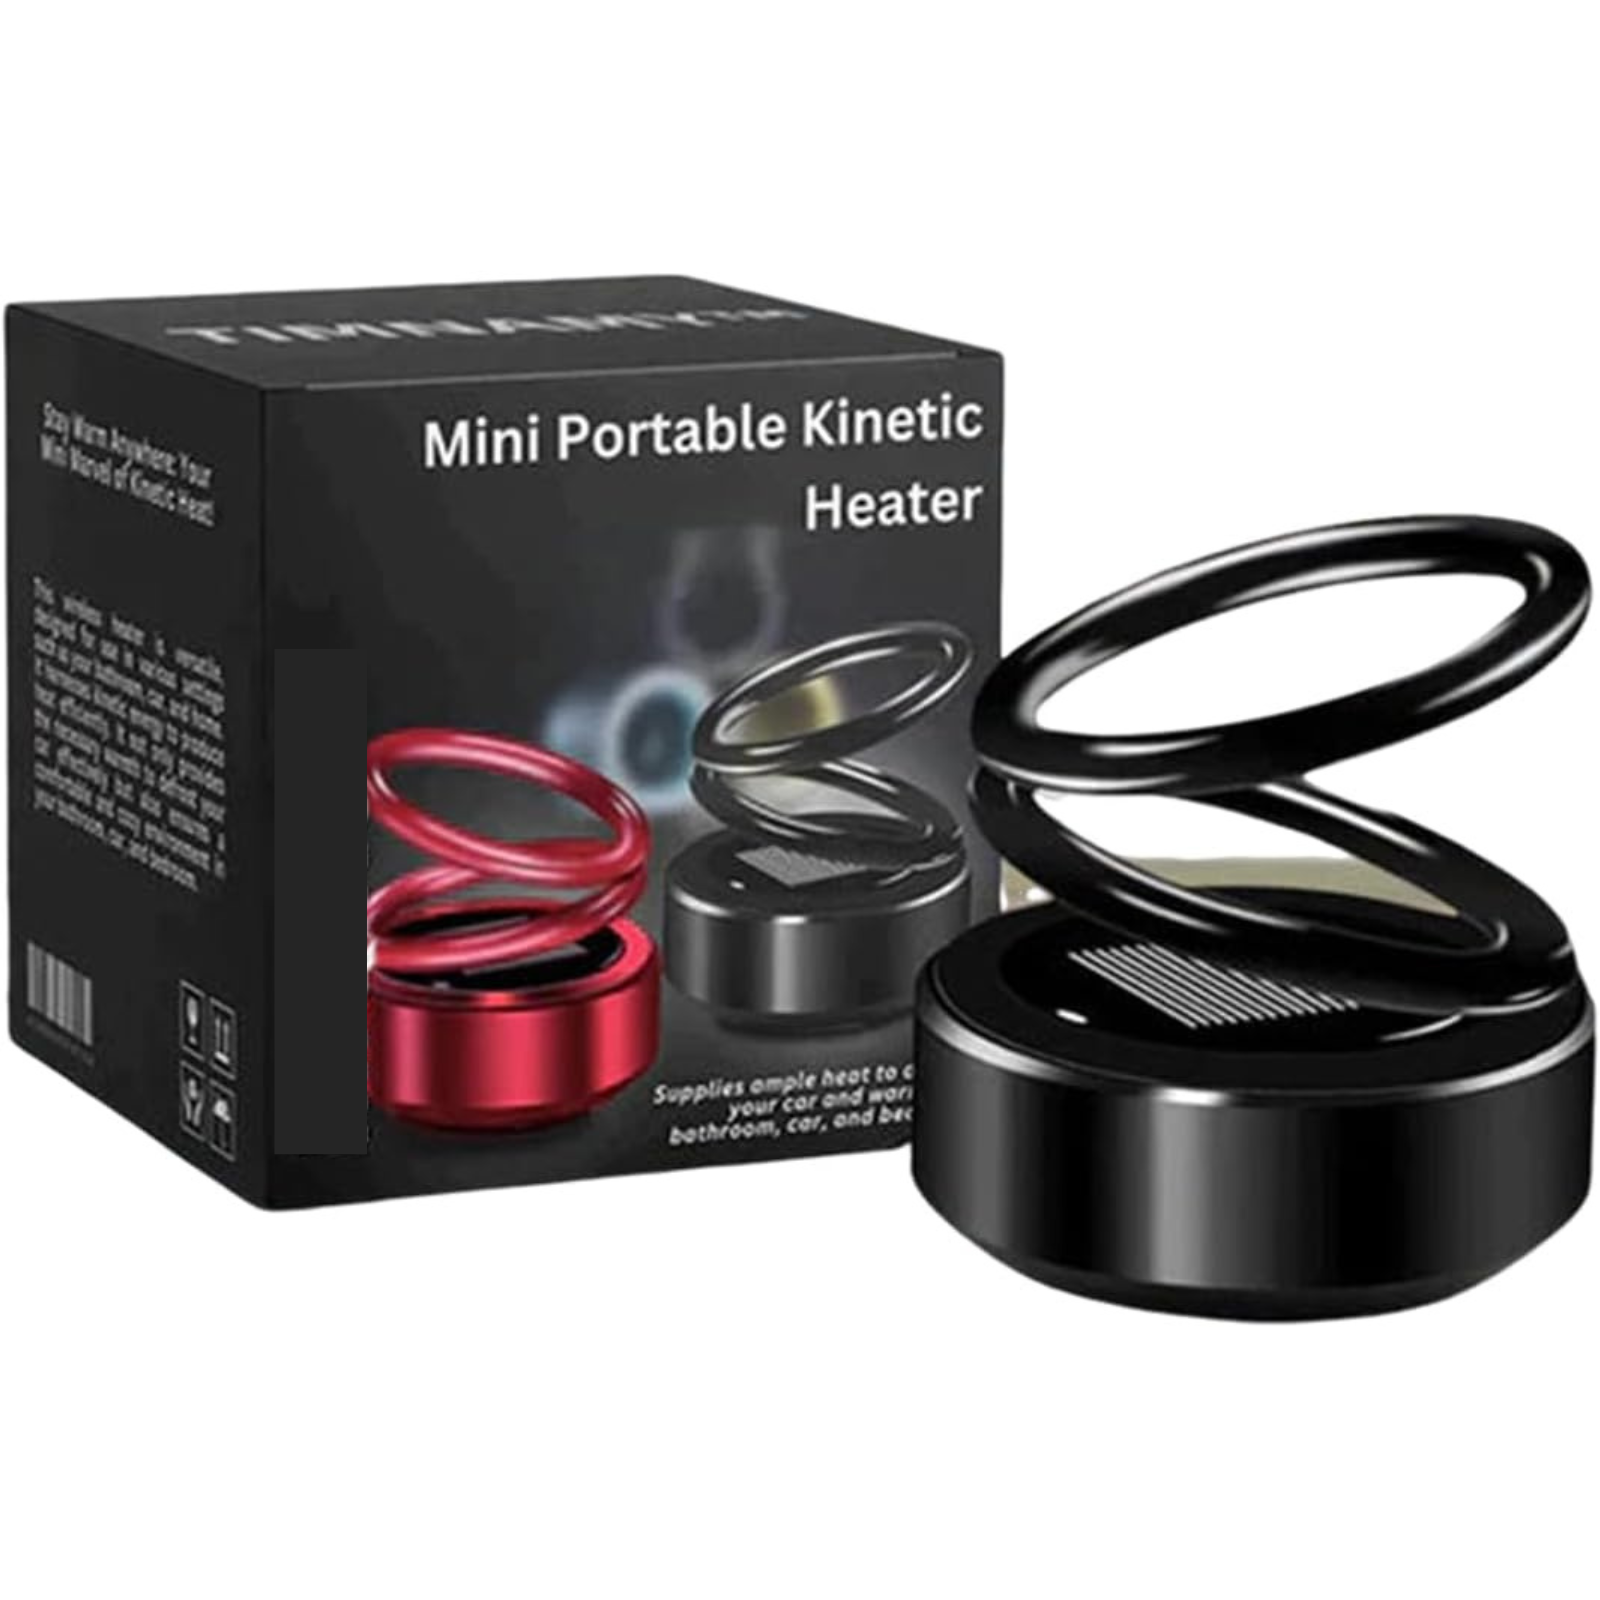 Portable Kinetic Mini Heater, Mini Portable Kinetic Heater,100% New